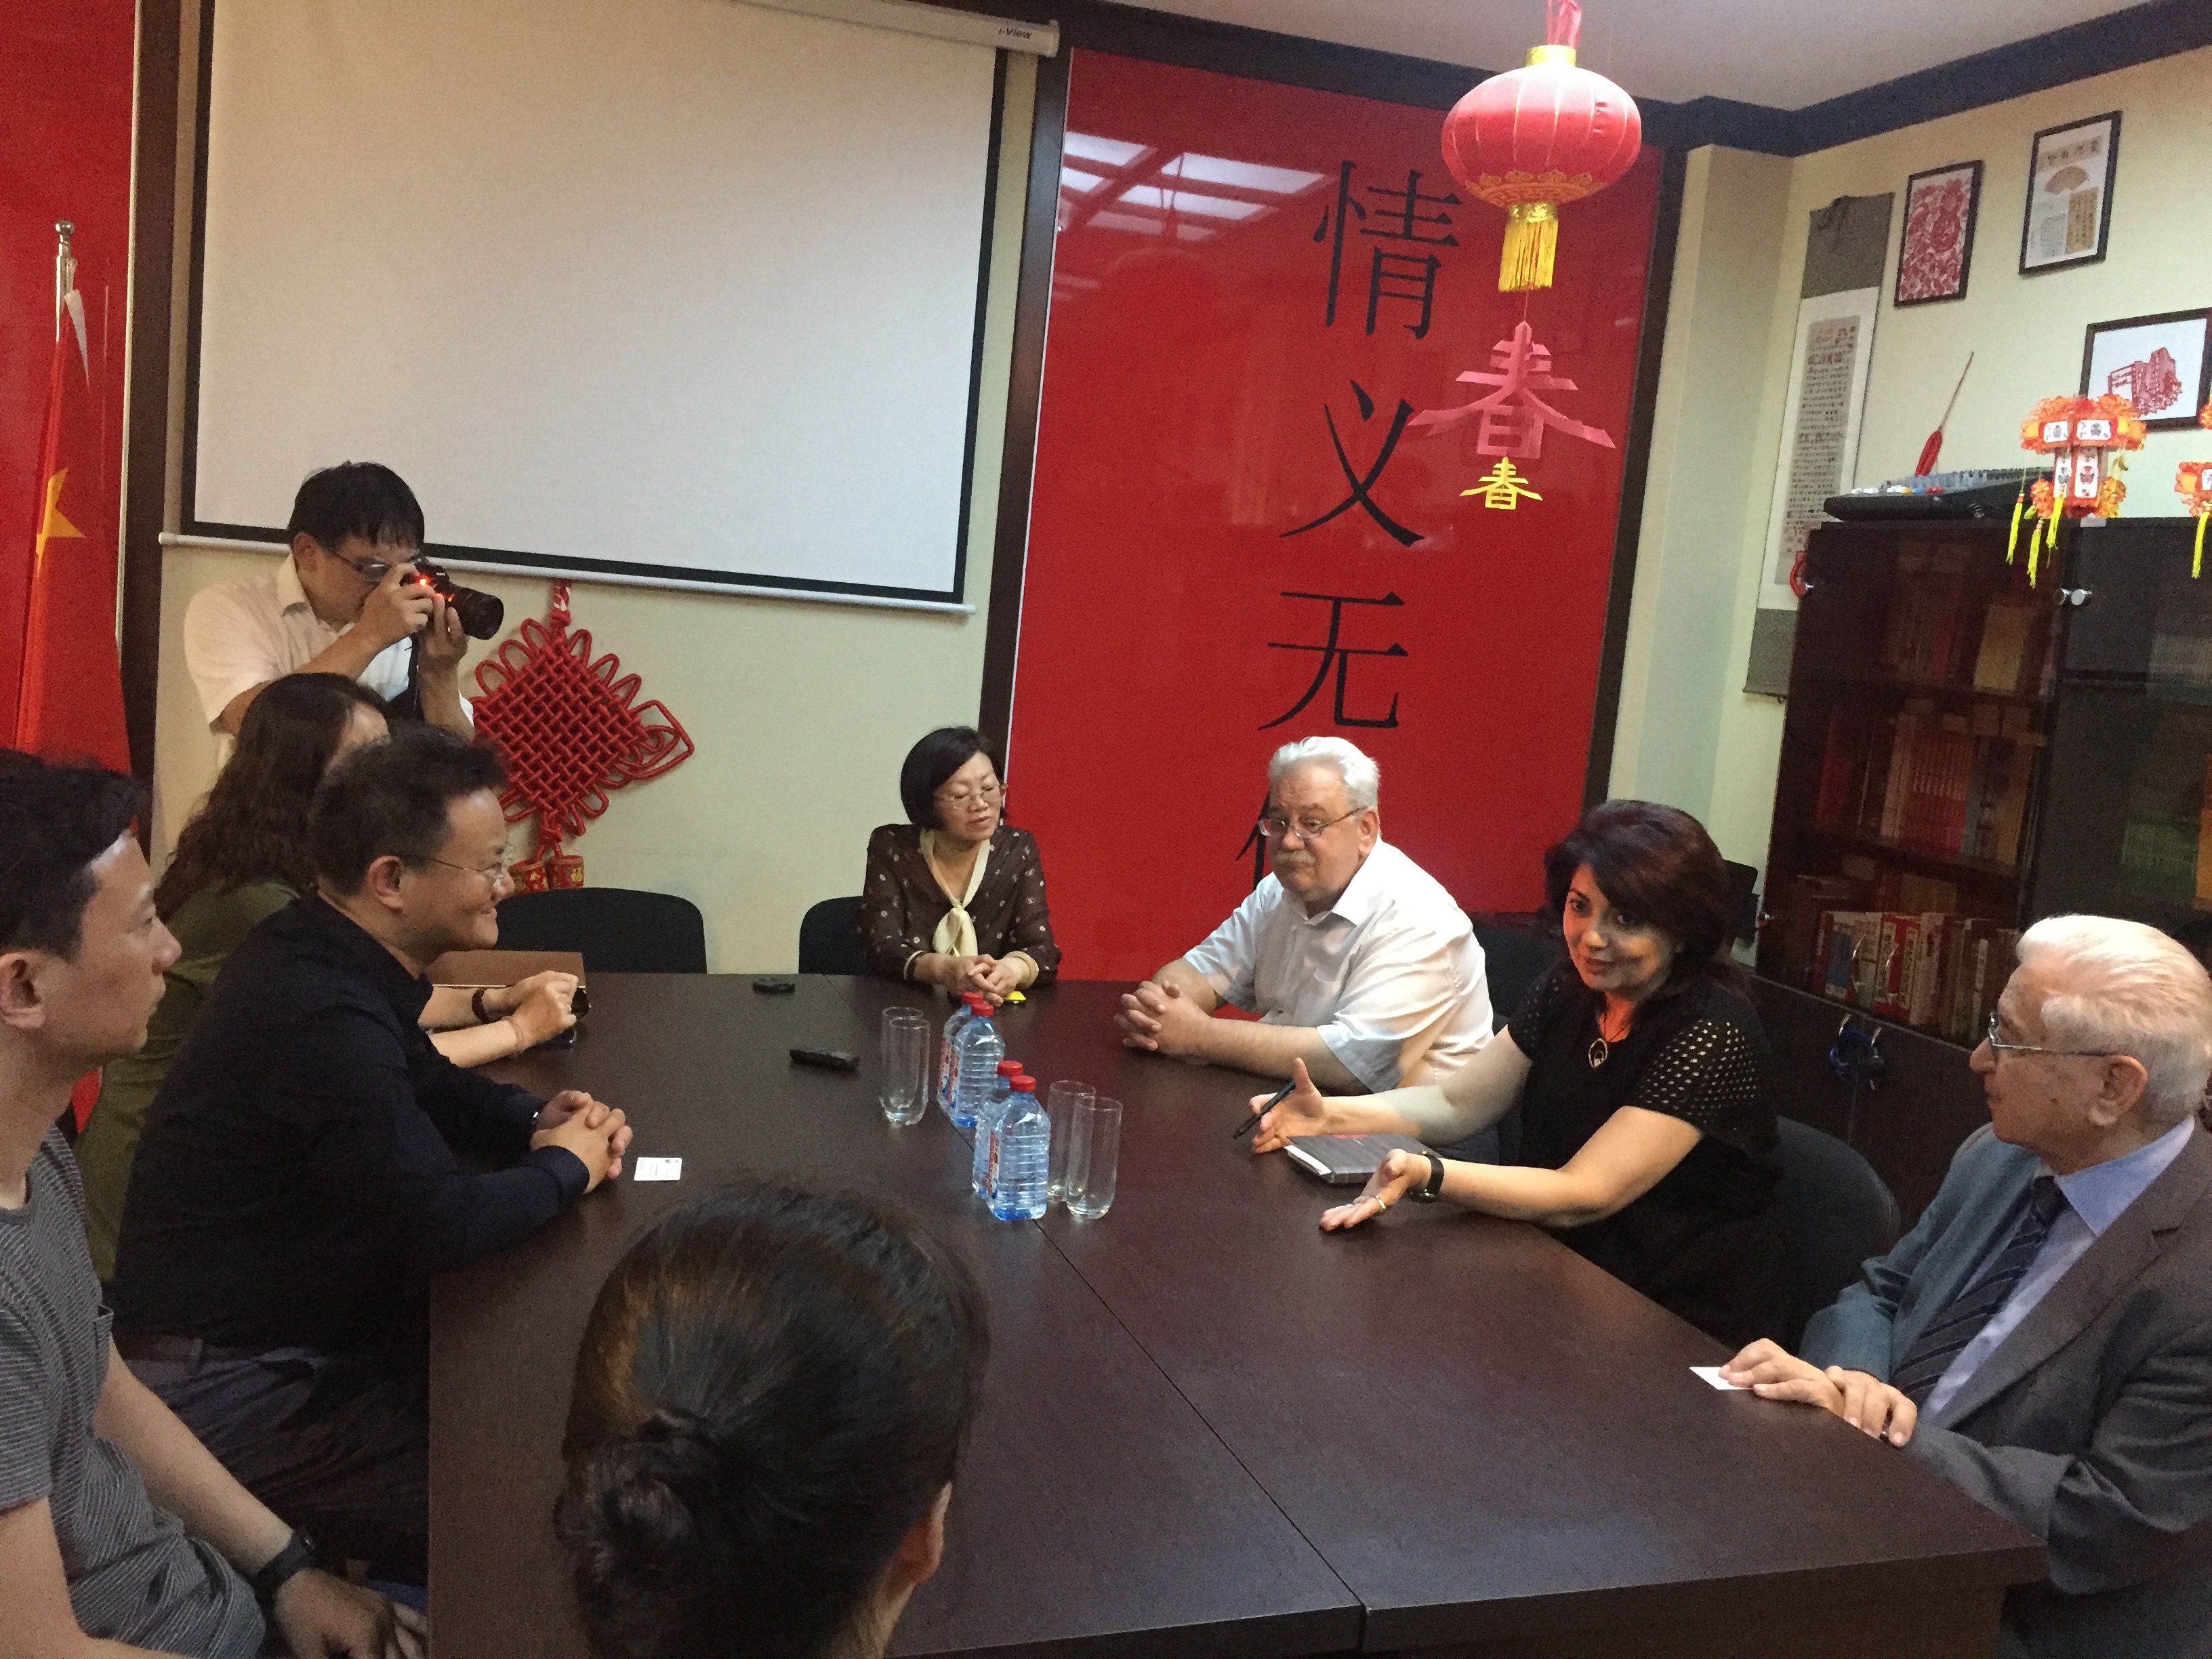 Член Народного политического консультативного совета Китая посетил Университет языков